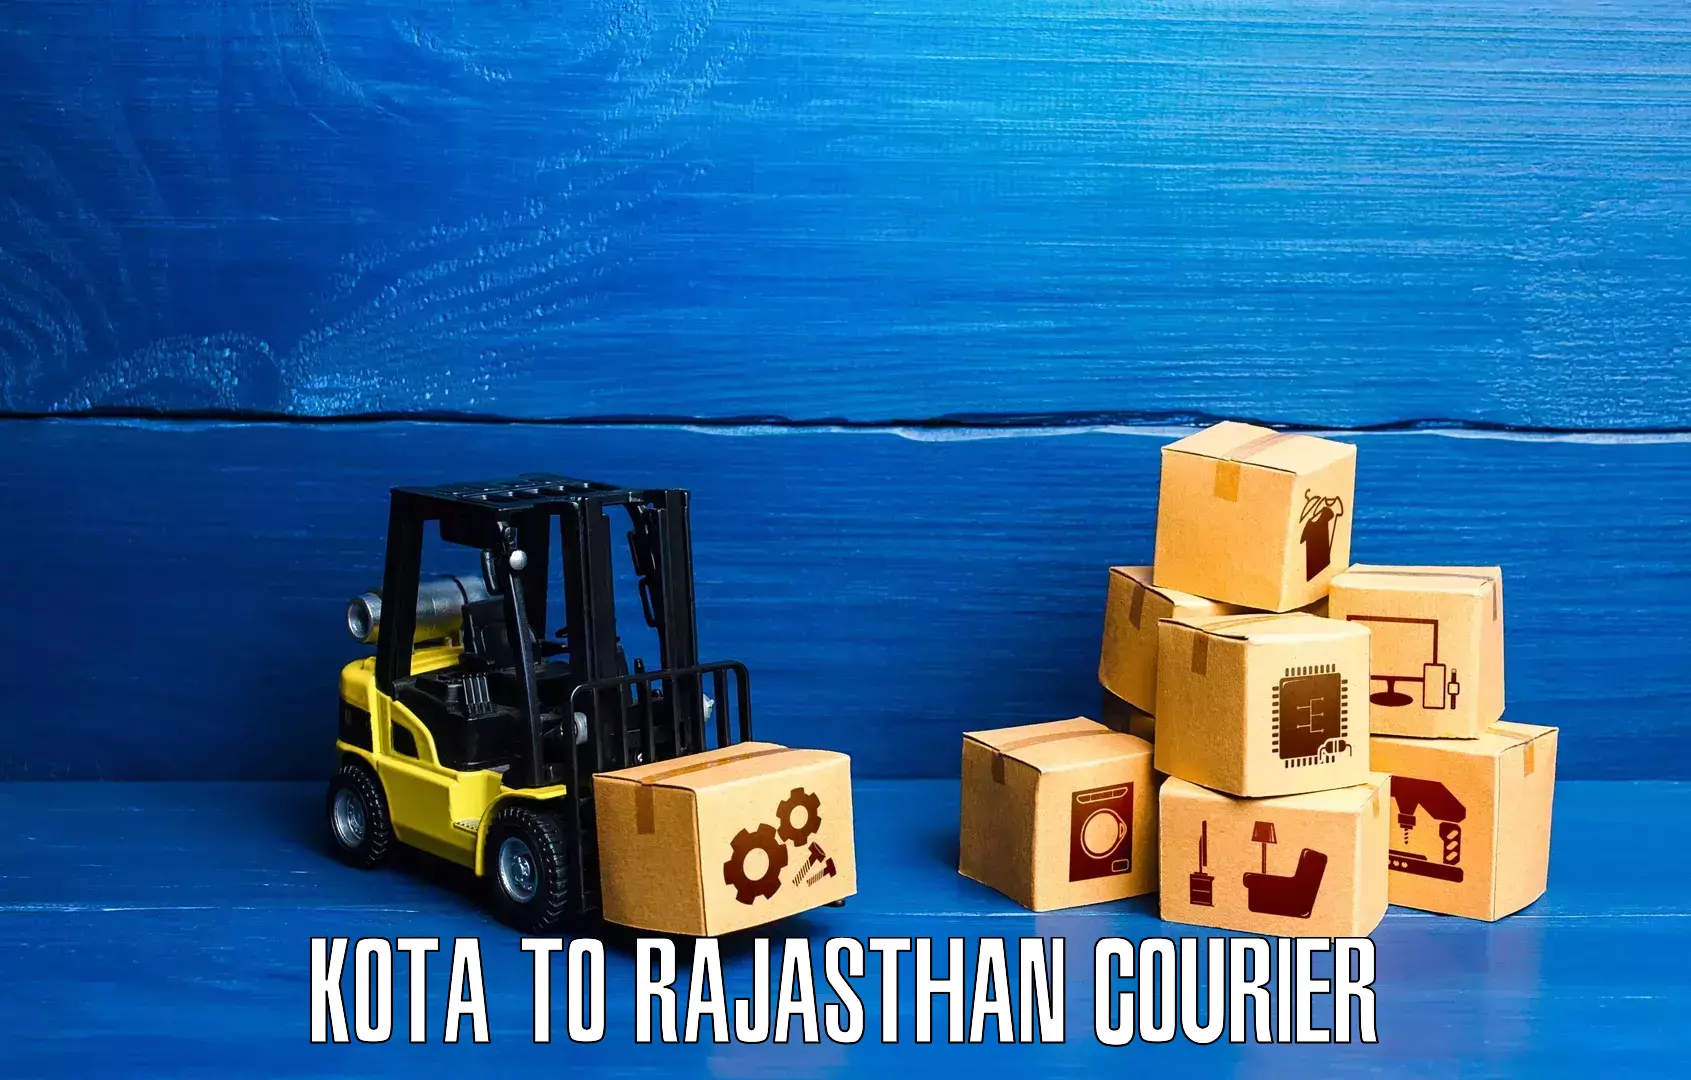 Urban courier service Kota to Yathalakunta